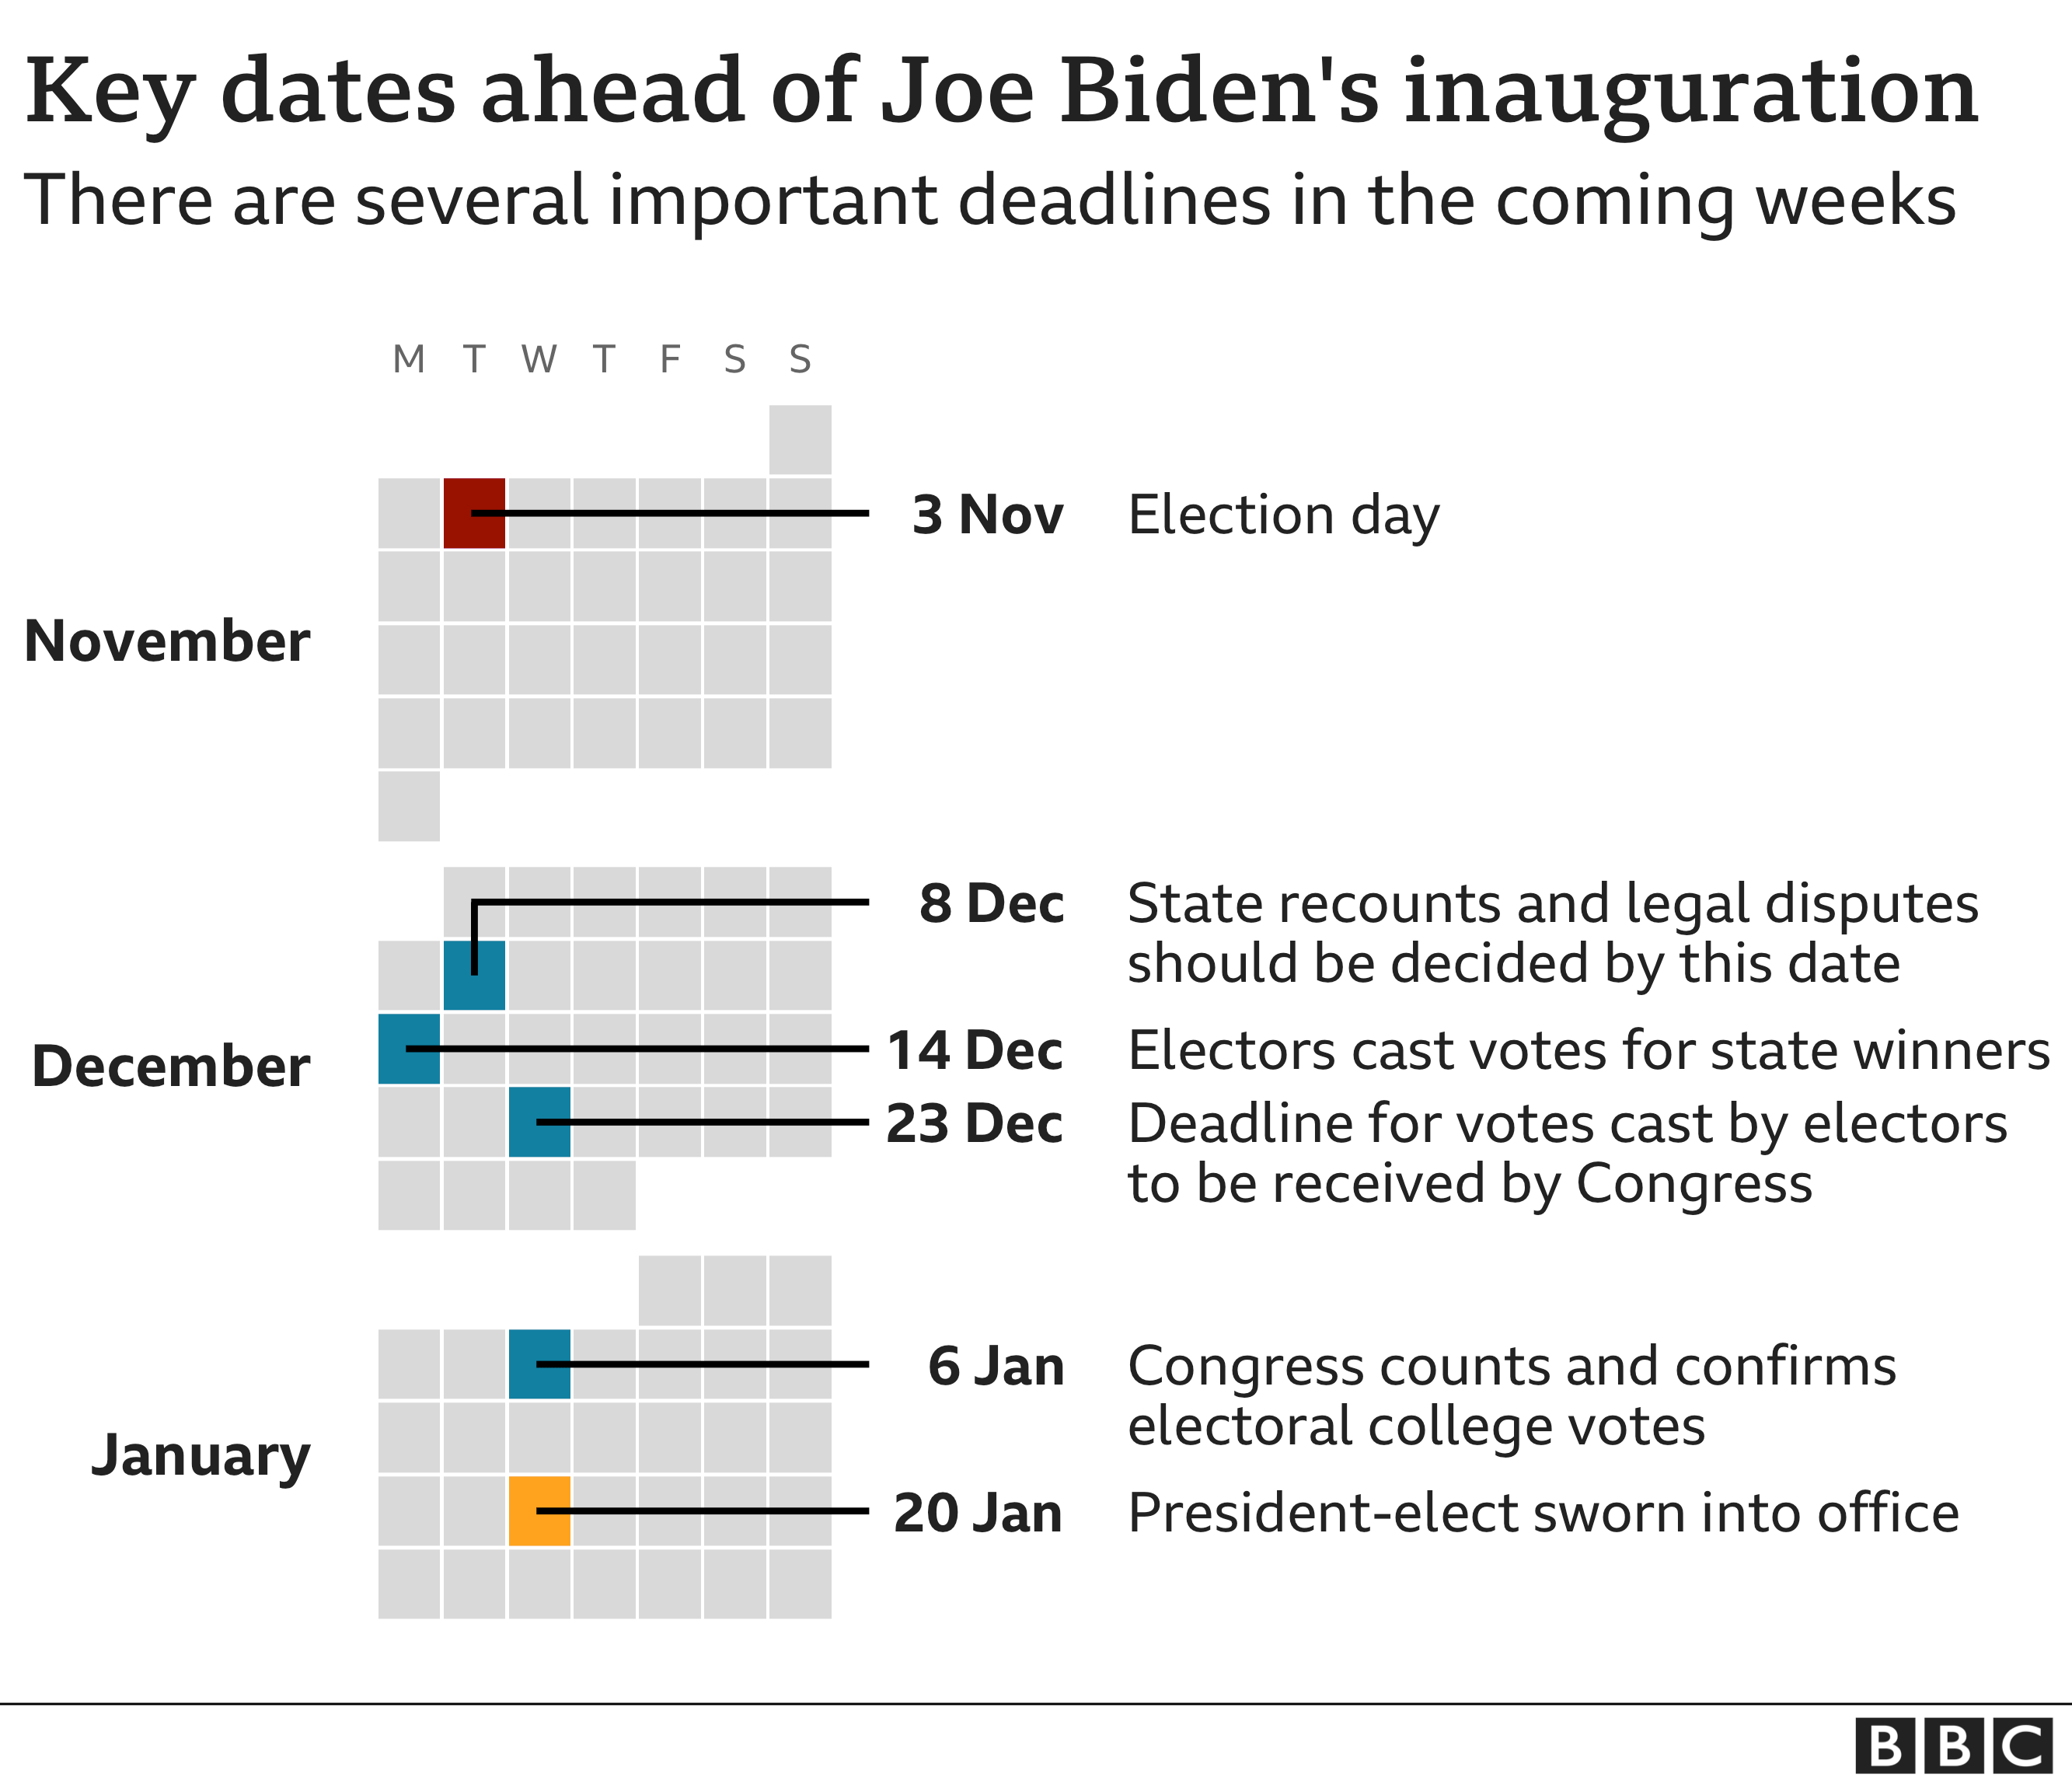 főbb dátumok Joe Biden beiktatása előtt